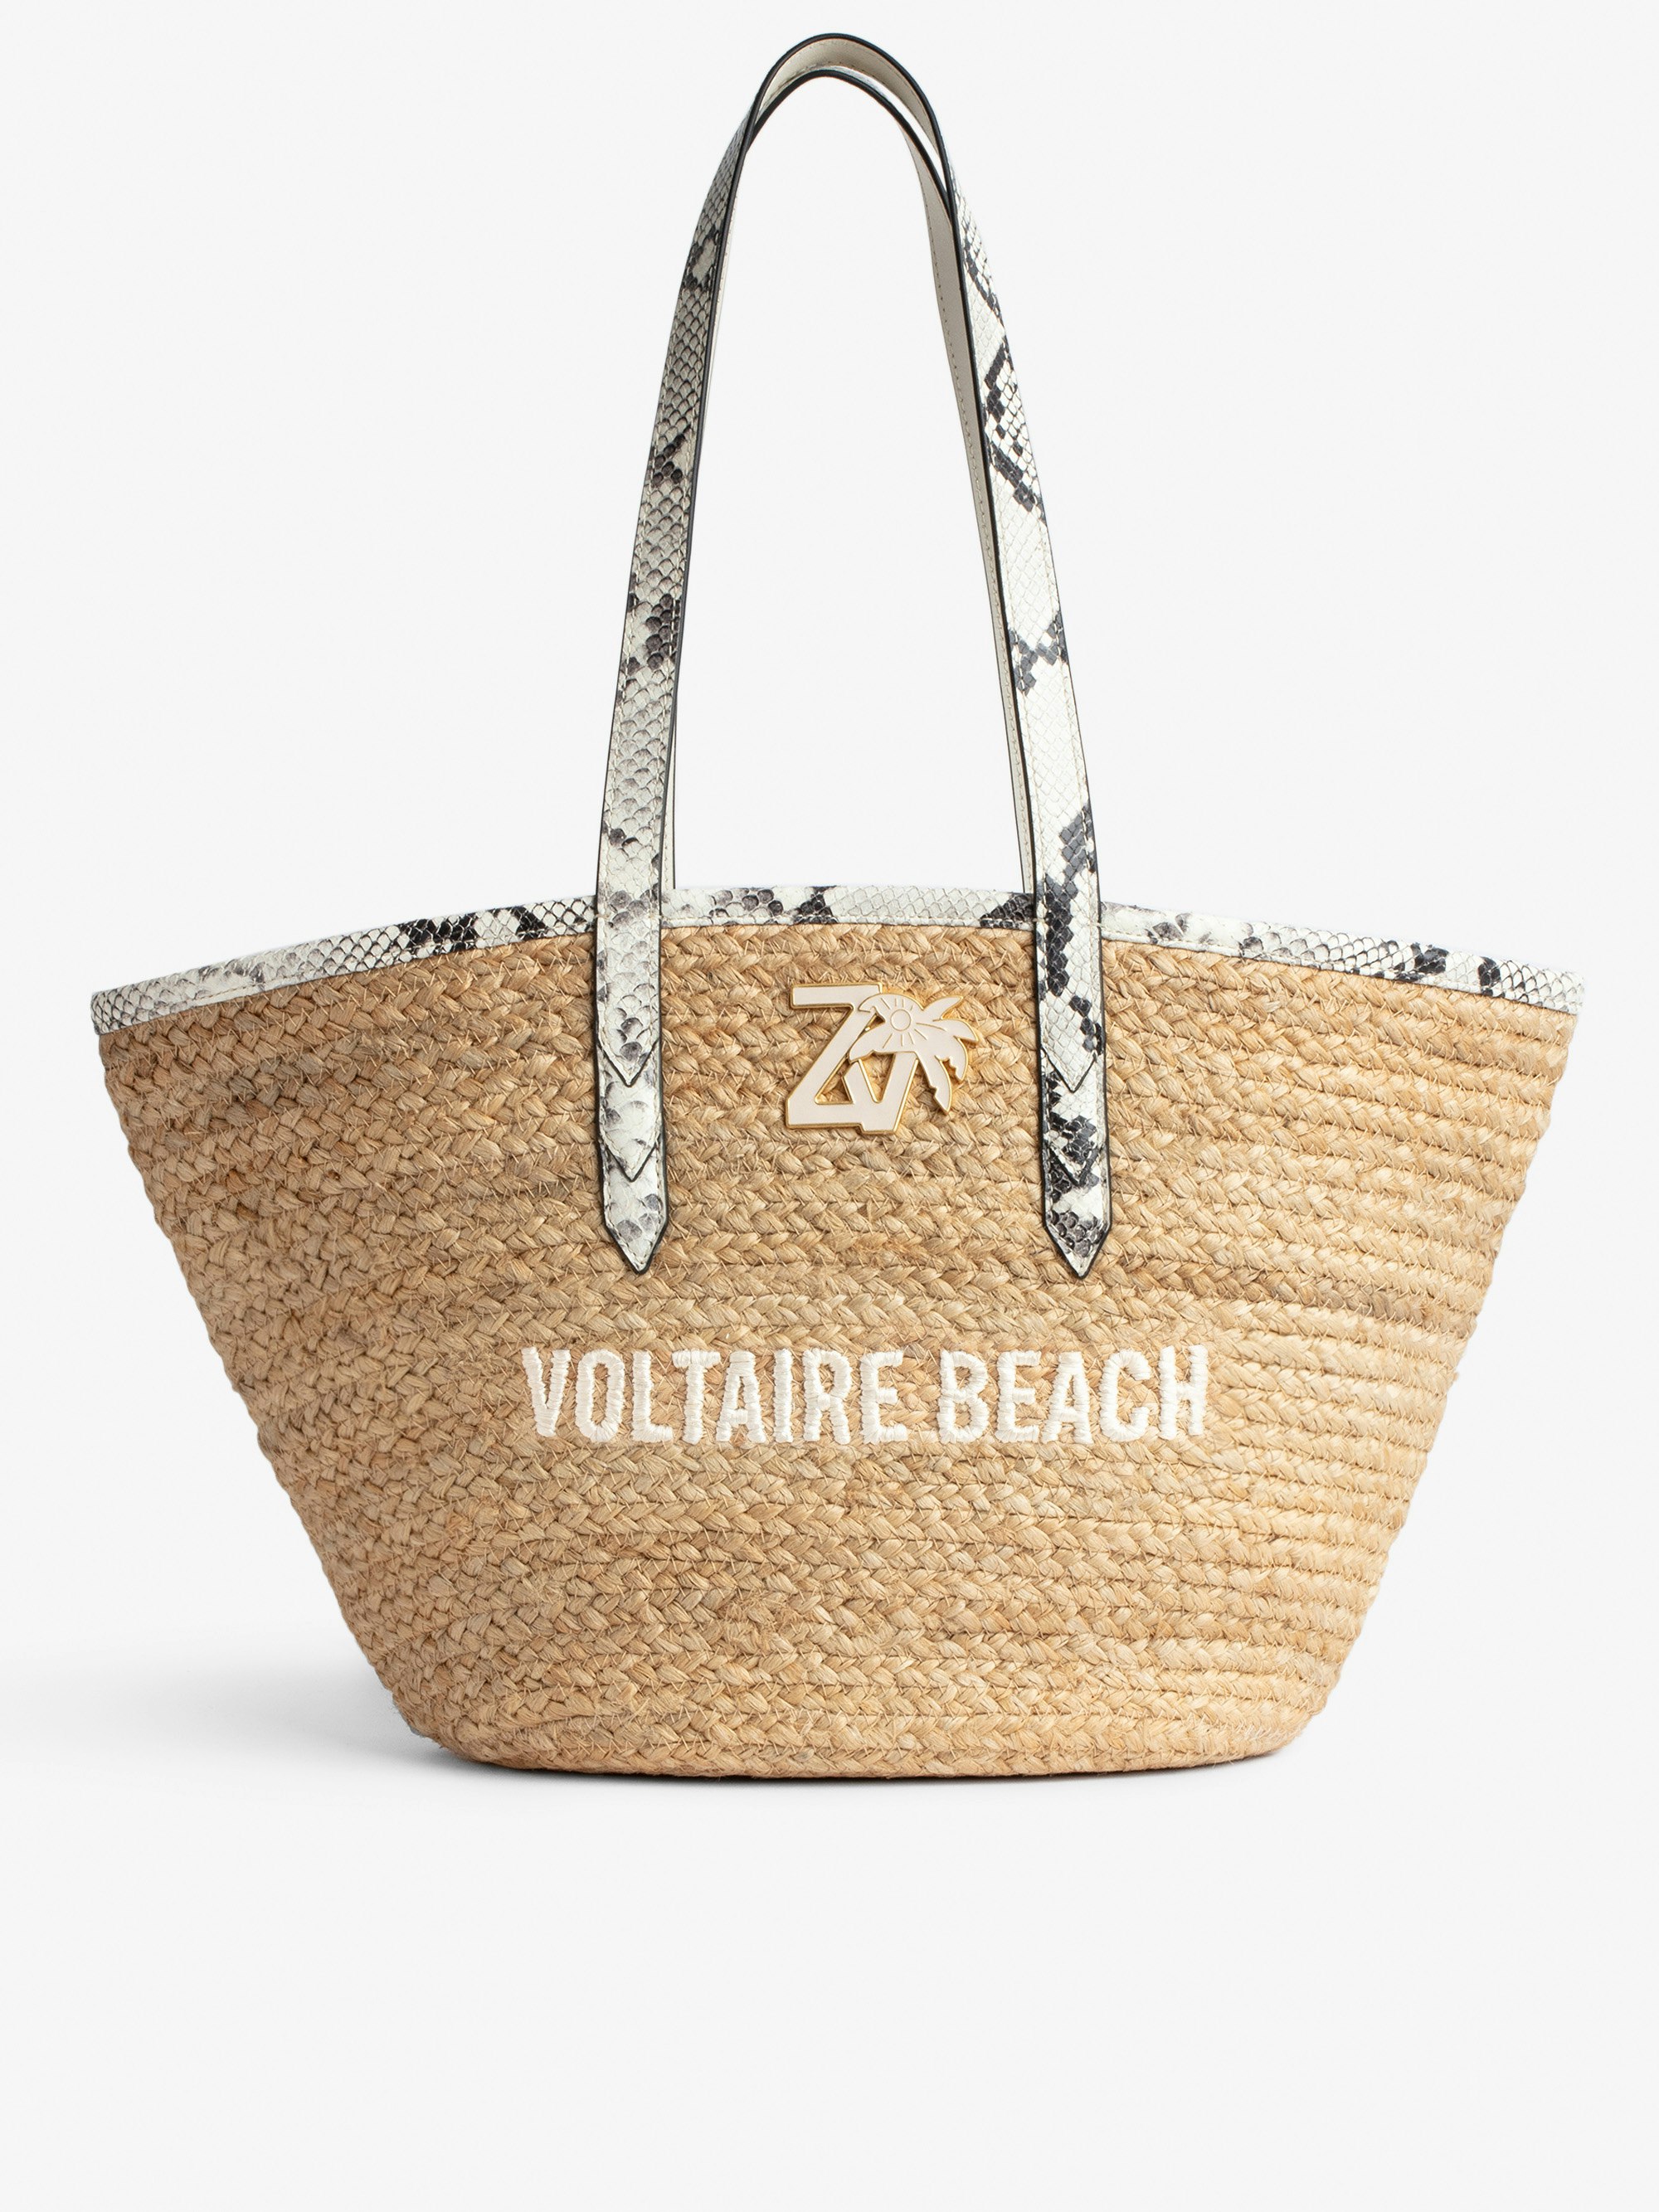 Tasche Le Beach Bag - Damen-Strohtasche mit Henkeln aus ecrufarbenem Leder in Python-Optik, „Voltaire Beach“-Stickerei und ZV-Charm